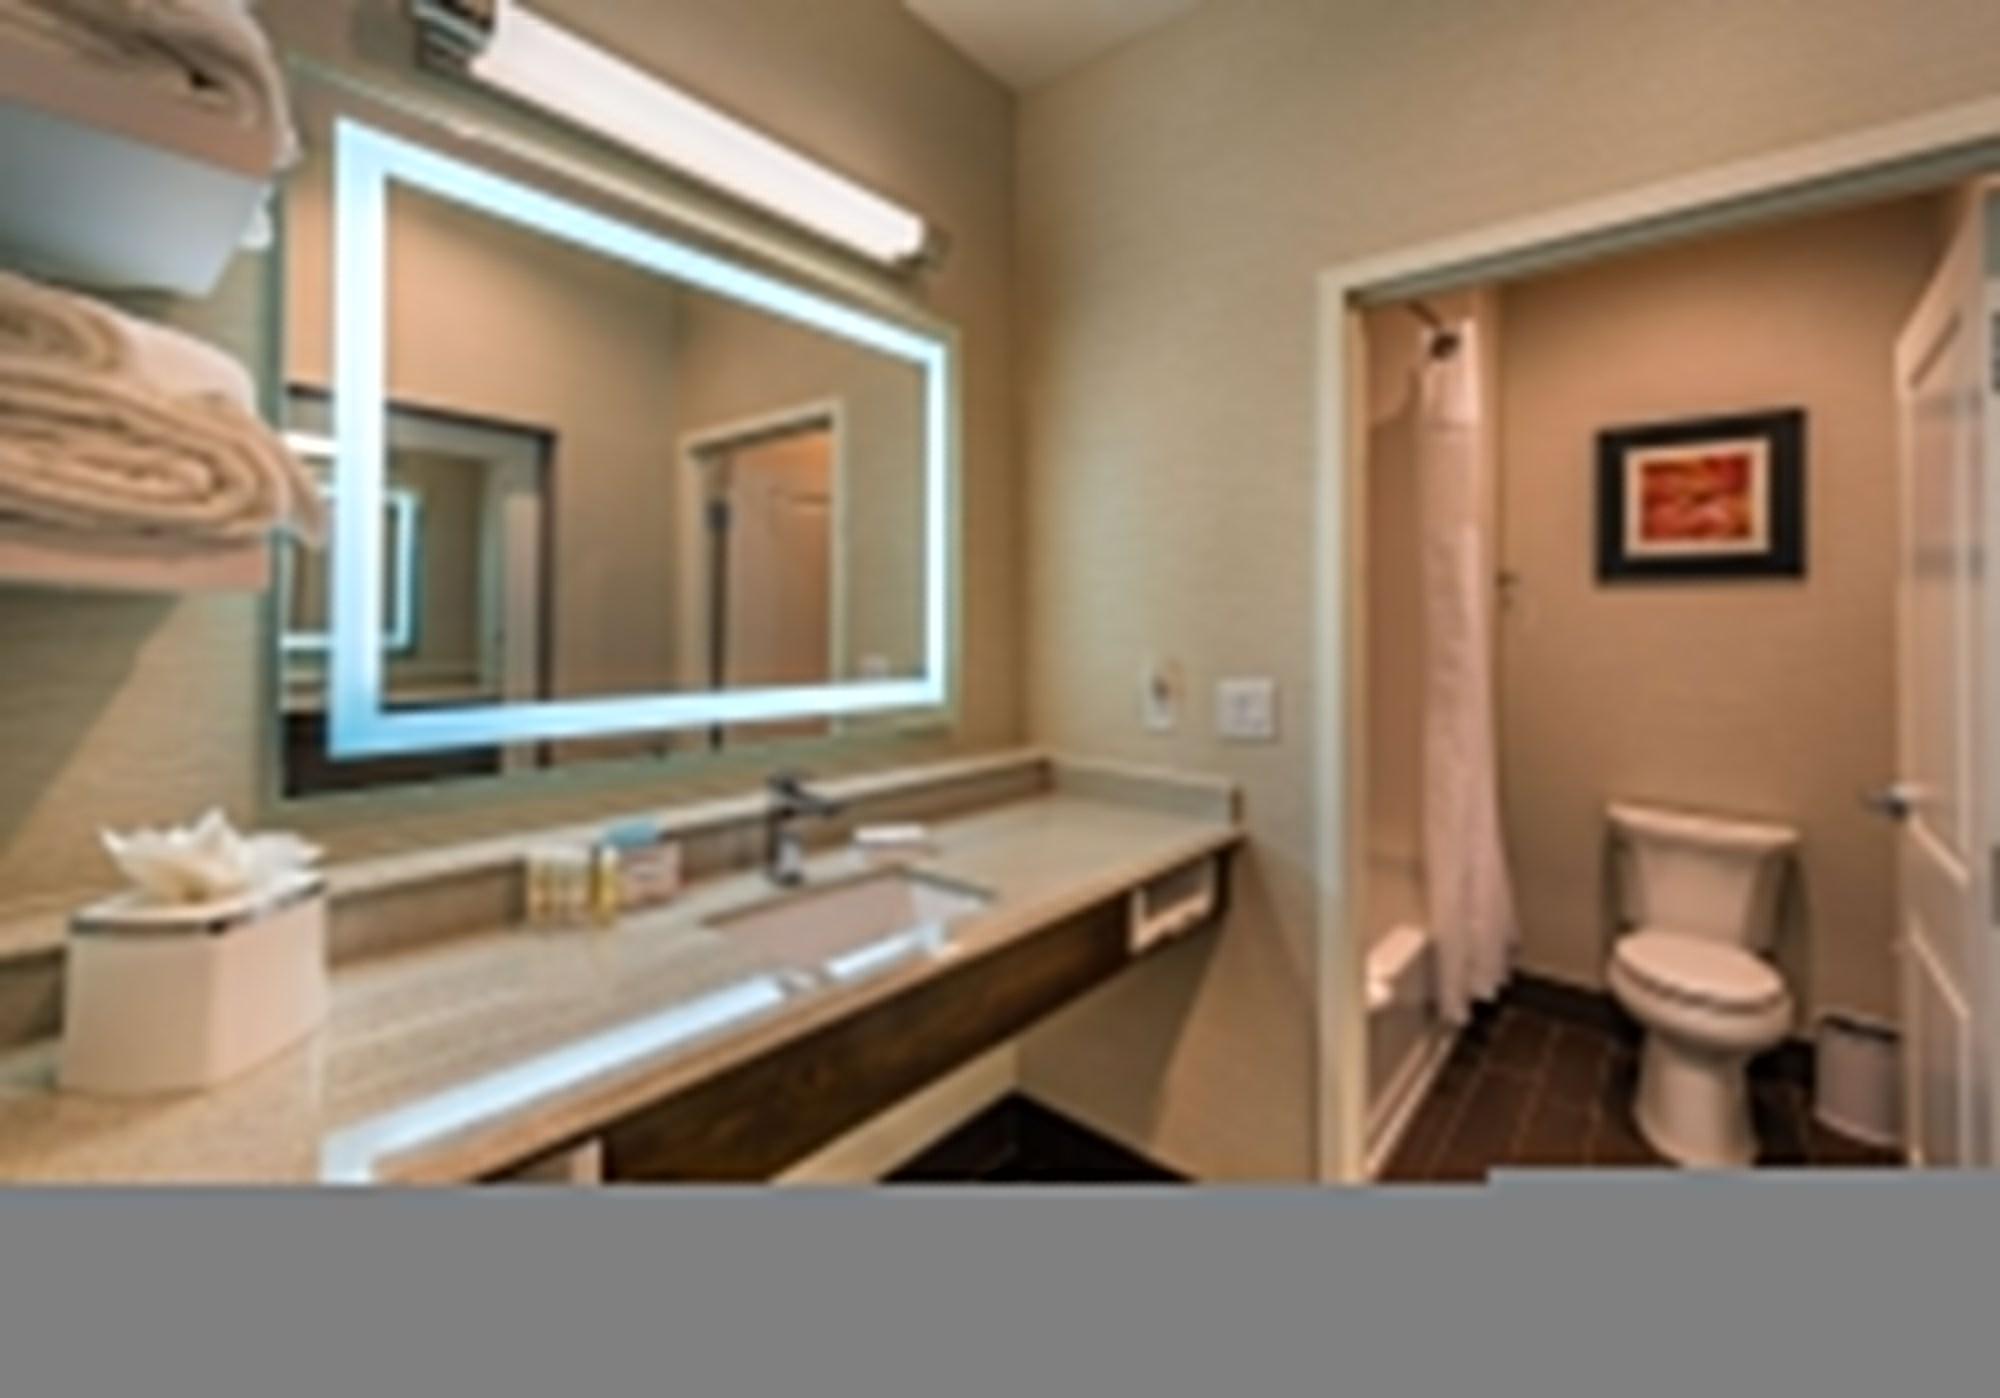 Hampton Inn & Suites - Reno West, Nv Buitenkant foto